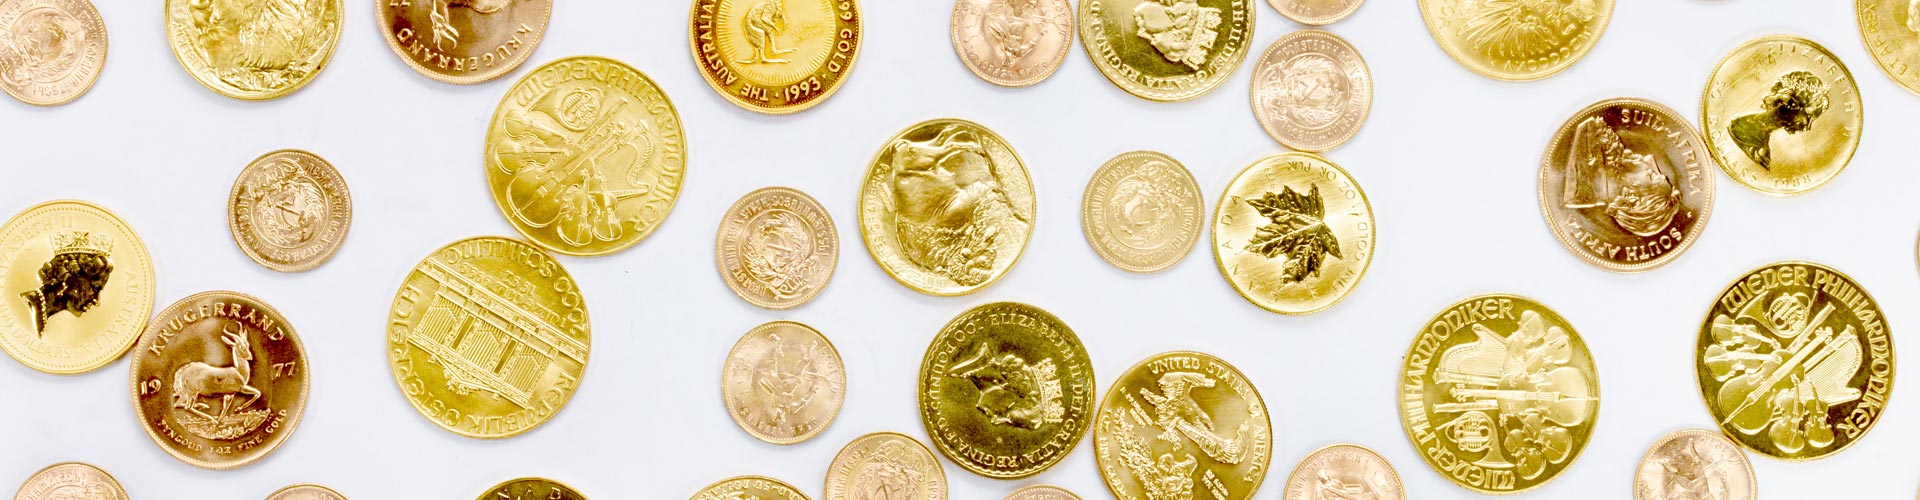 Verschiedene Goldanlagemünzen unter anderem Krügerrand, Maple Leaf und Golden Nugget